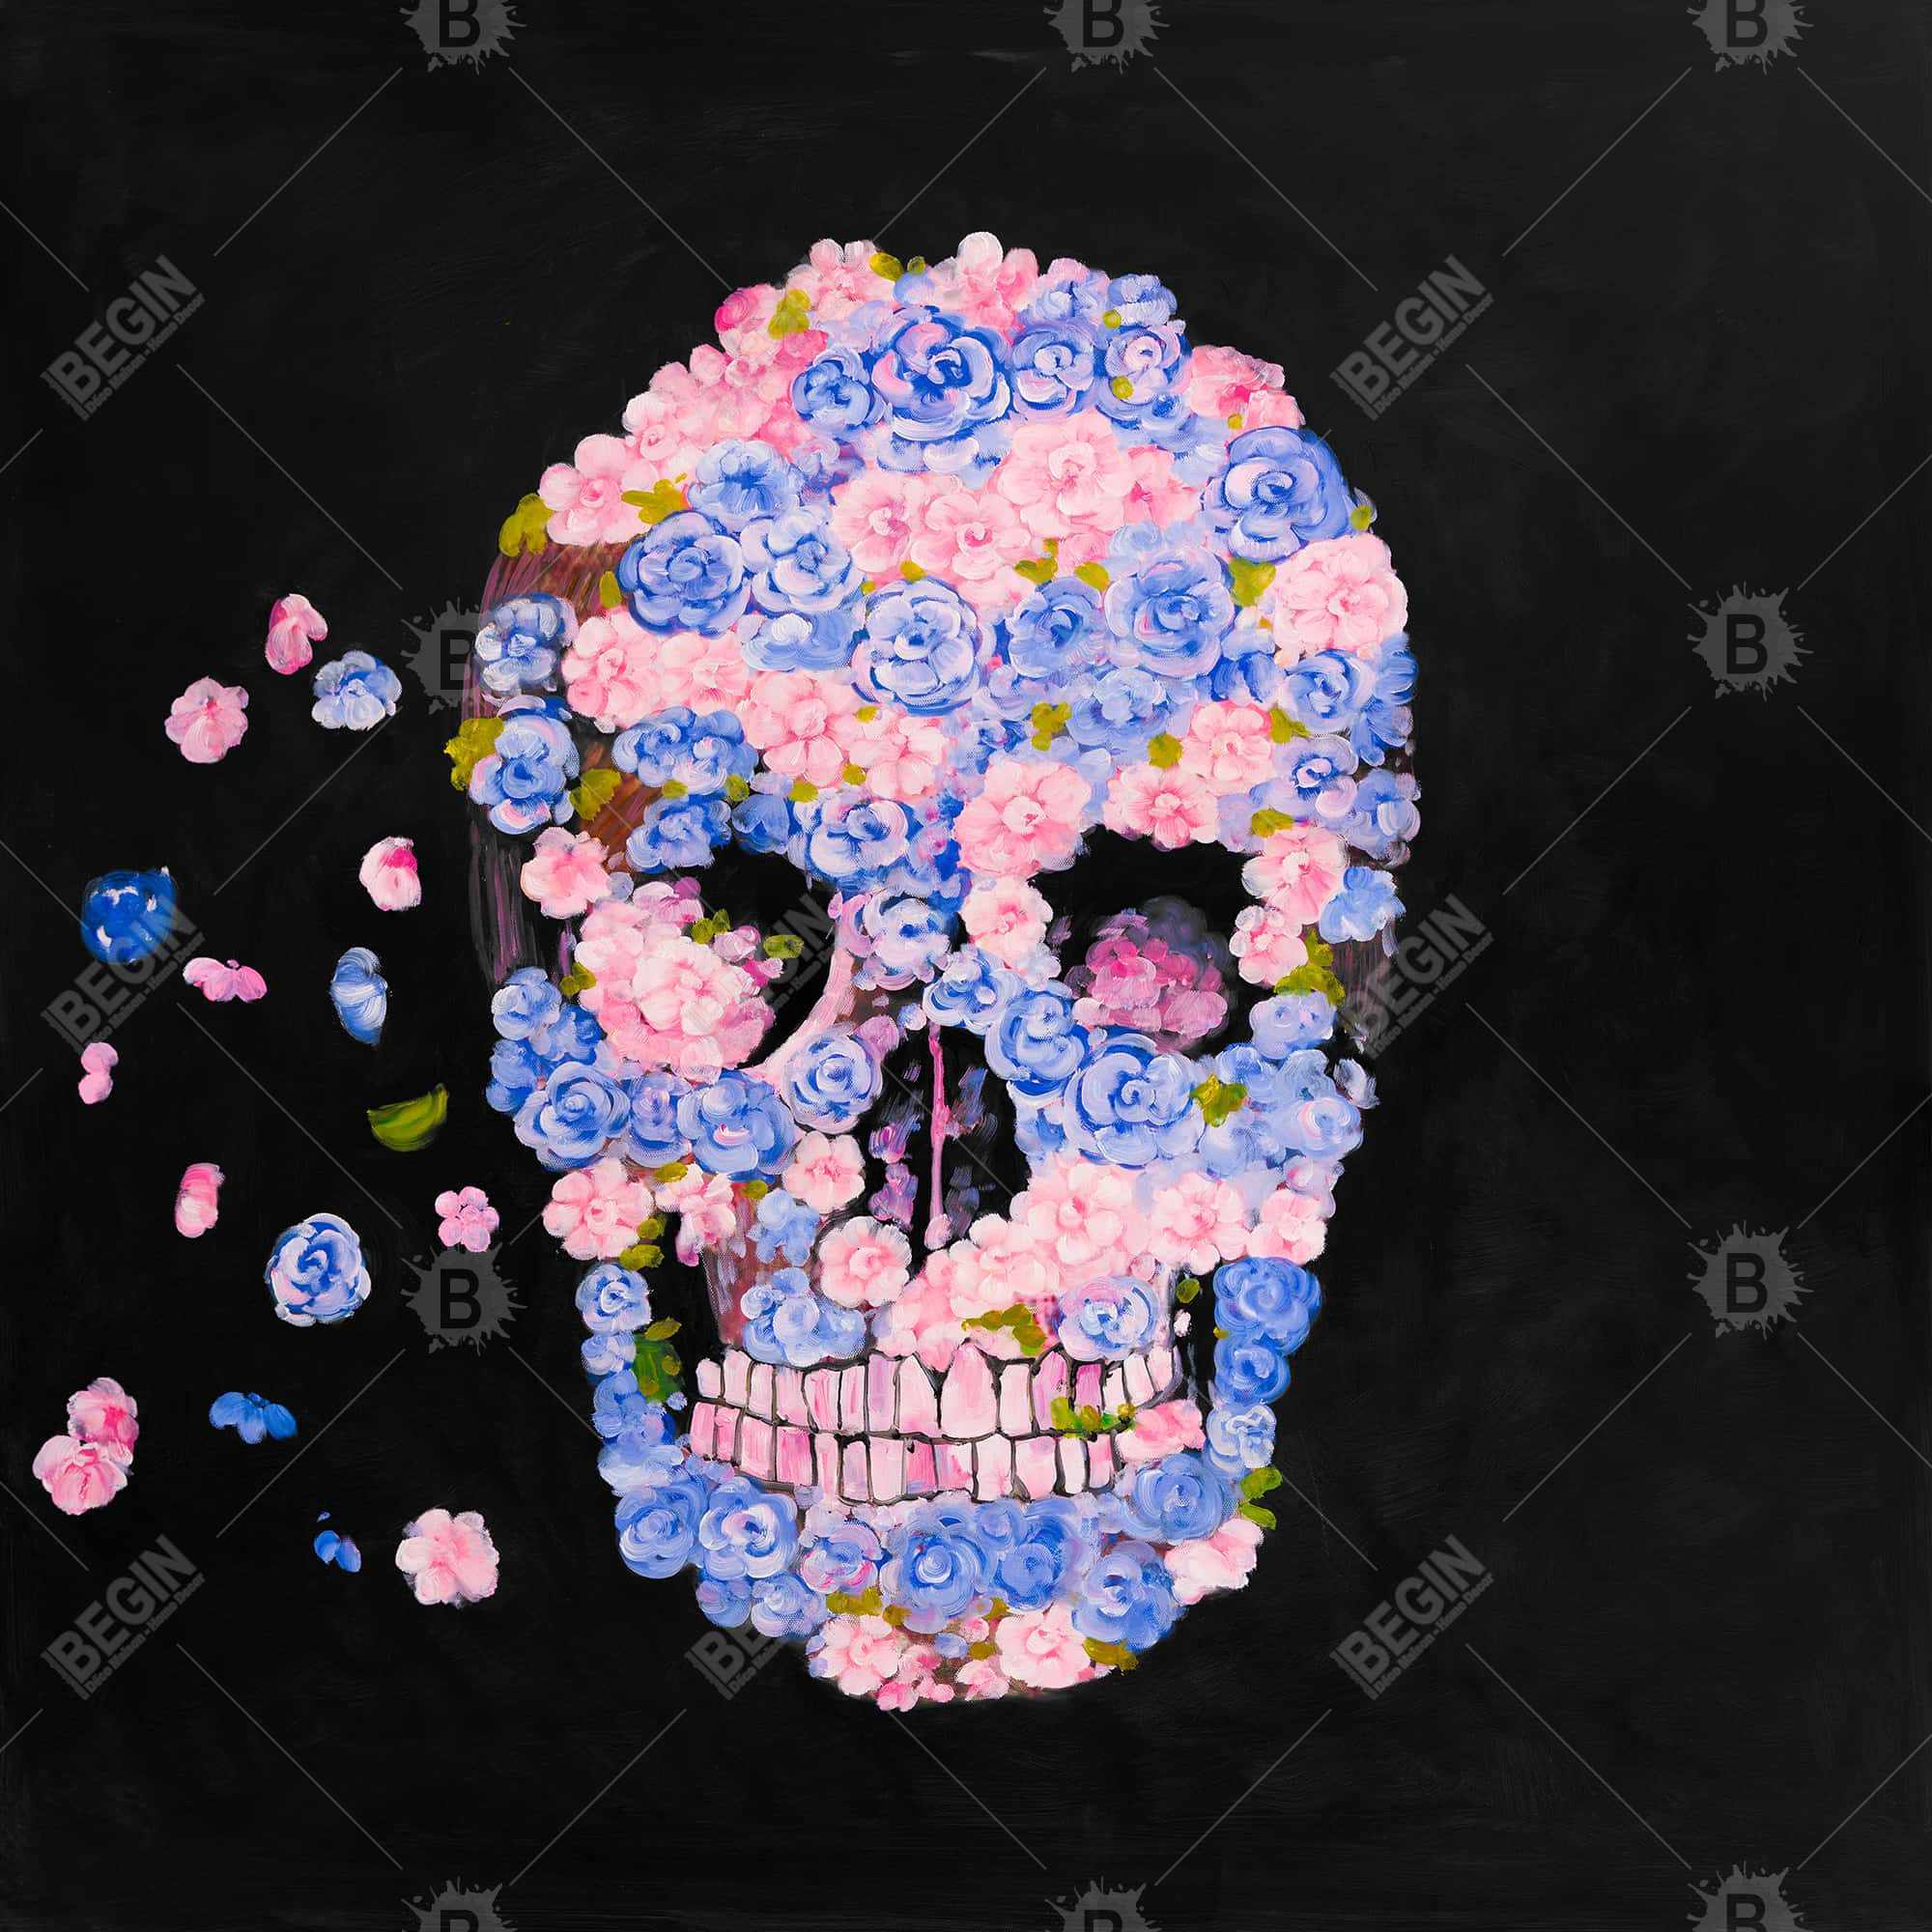 Skull of flowers in flight